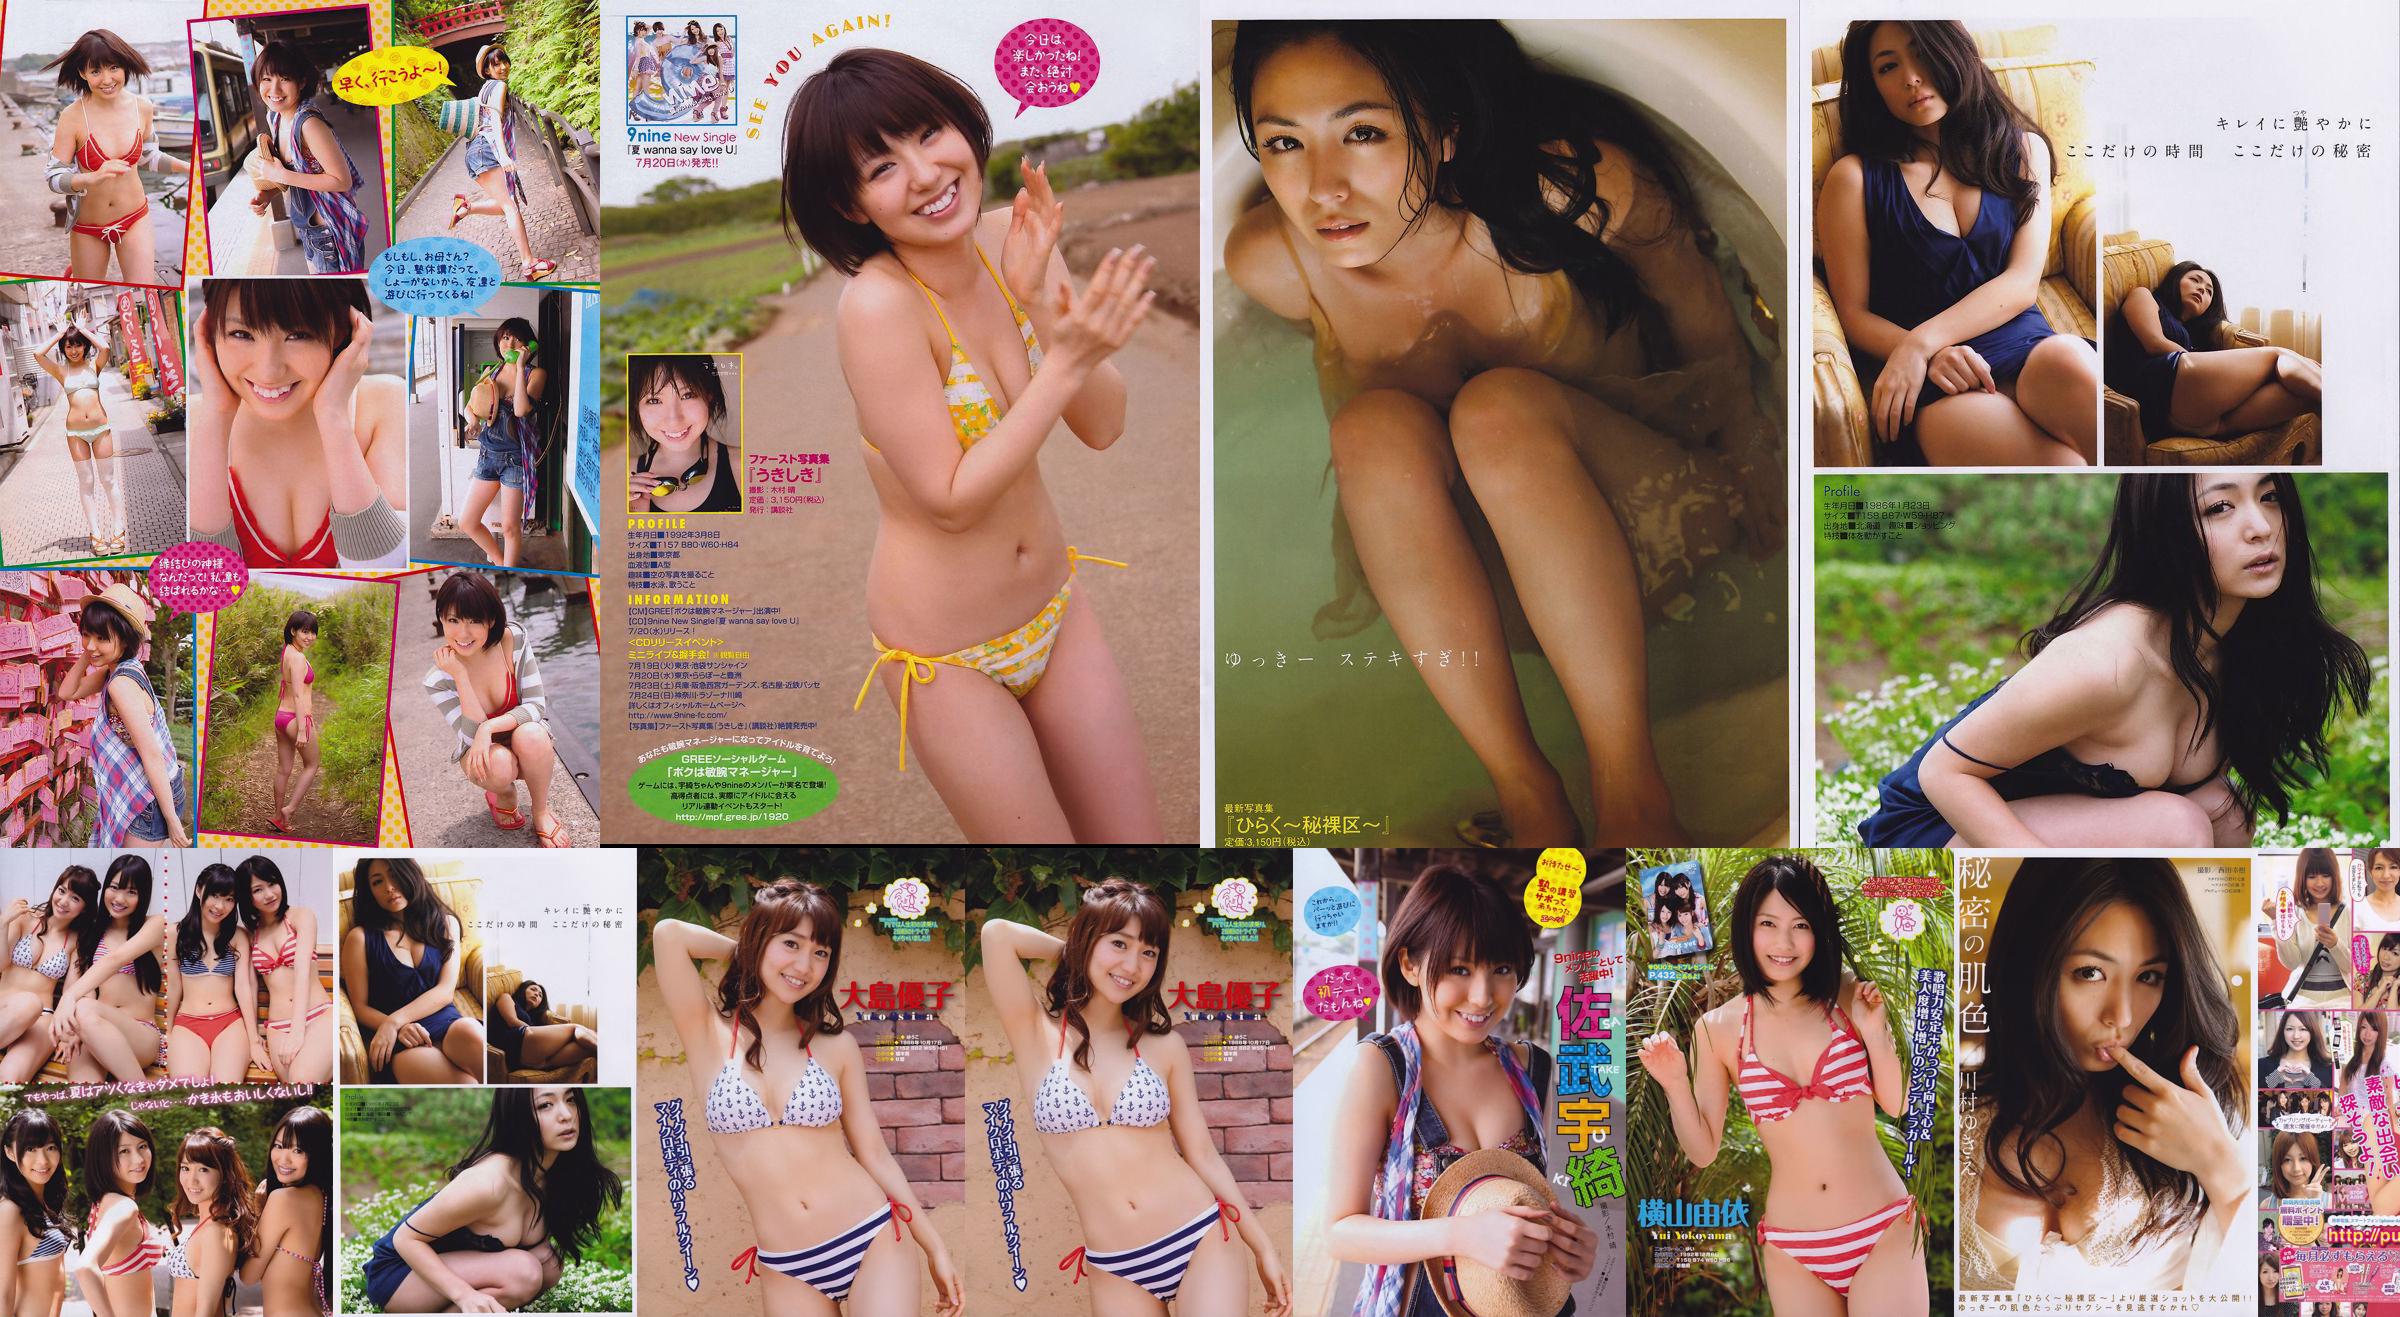 [Young Magazine] Noch nicht Kawamura ake き え Satake Uki 2011 No.32 Photo Magazine No.513365 Seite 1